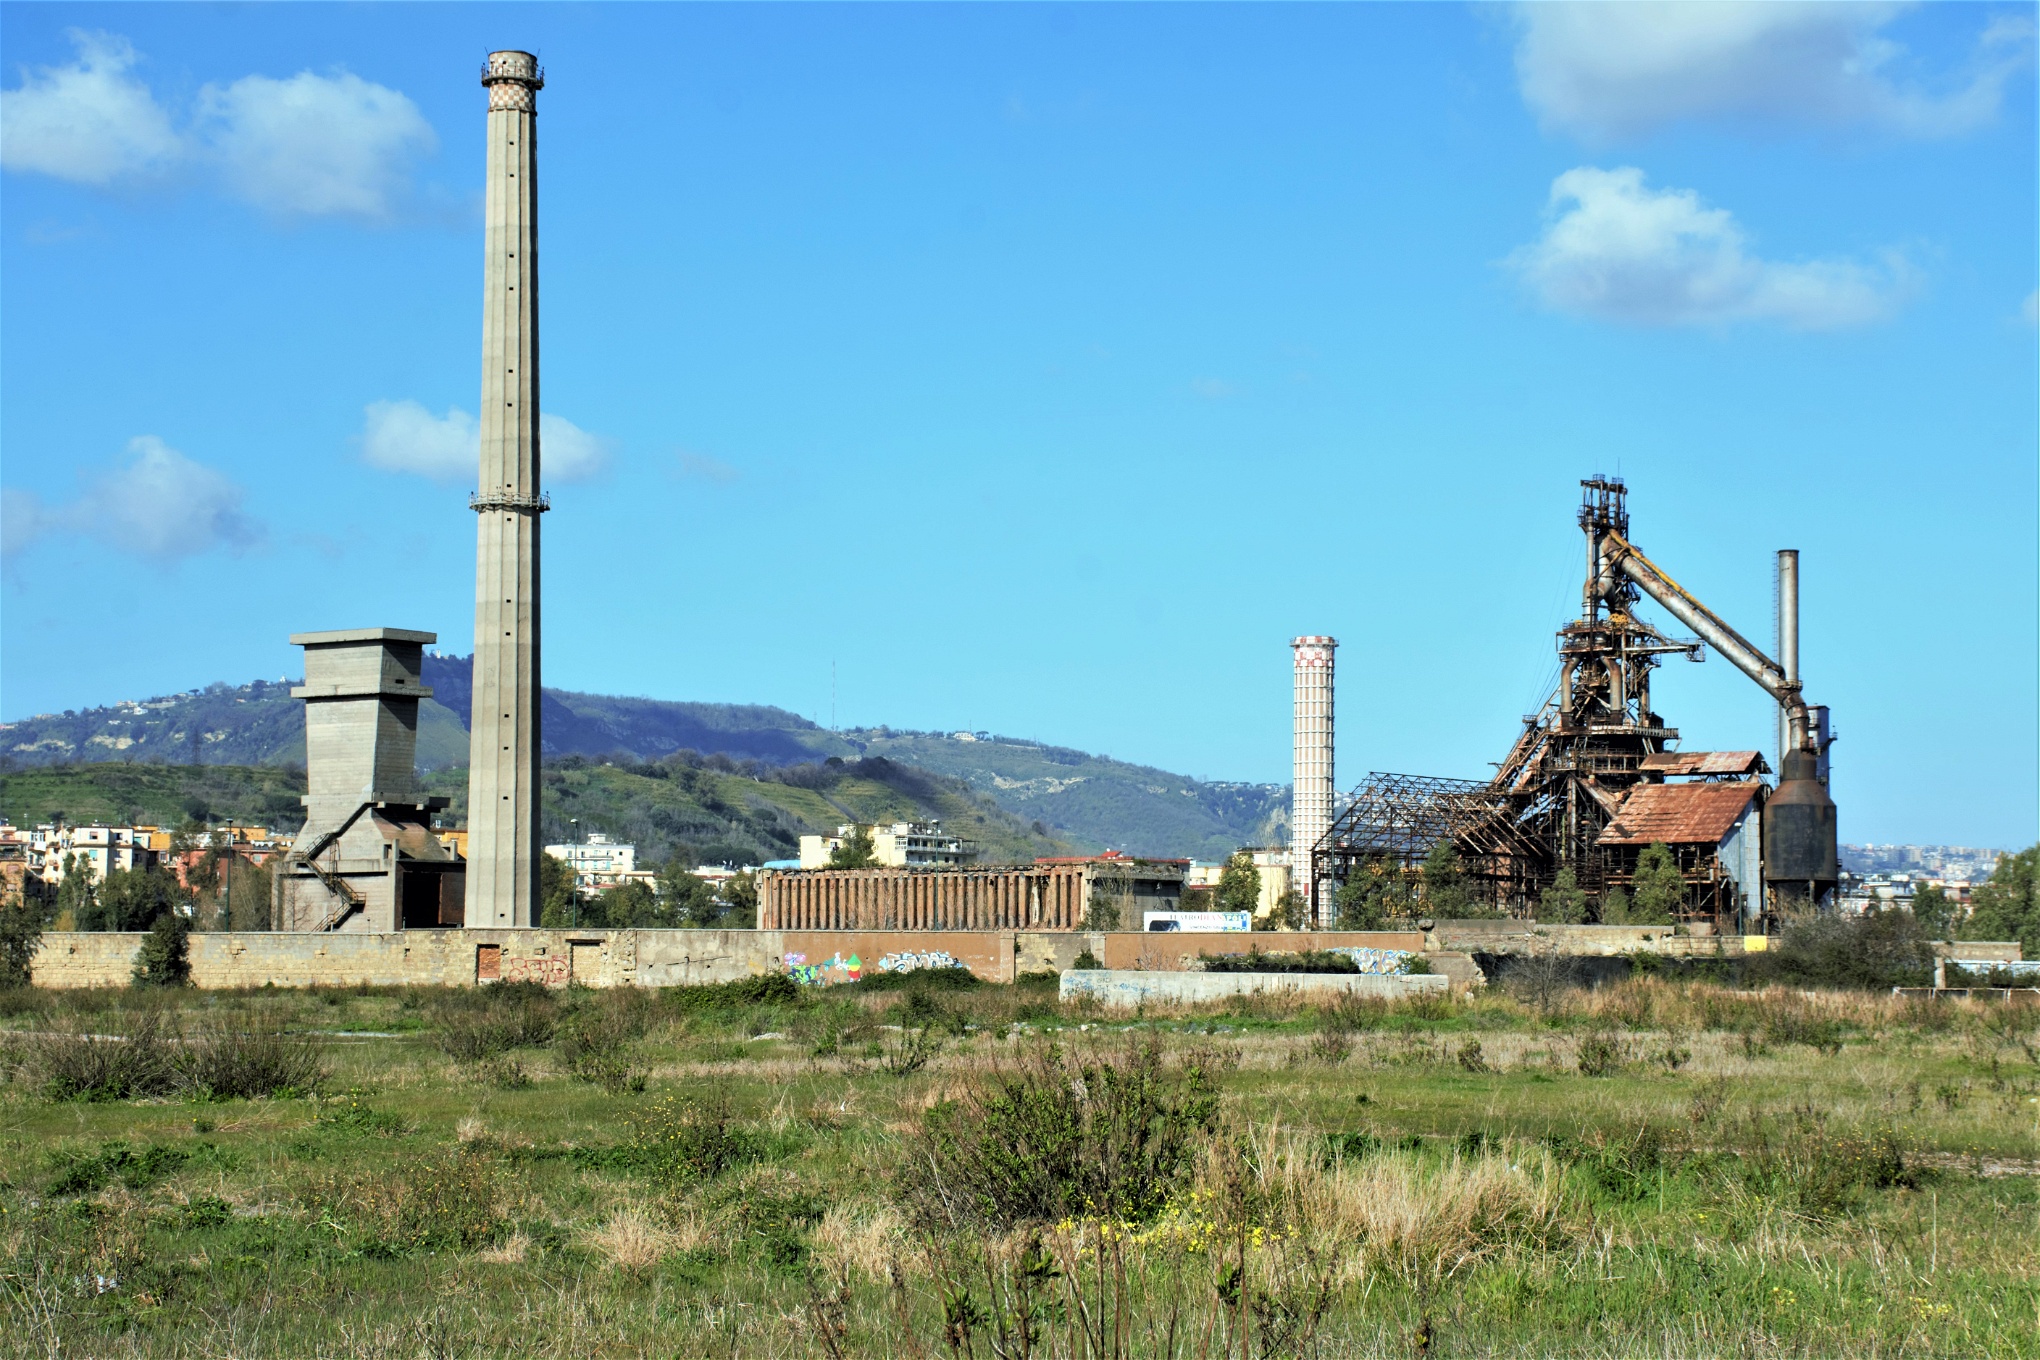 I Bagnoli har förorenat avfall samlats i årtionden och saneringen uteblivit. 